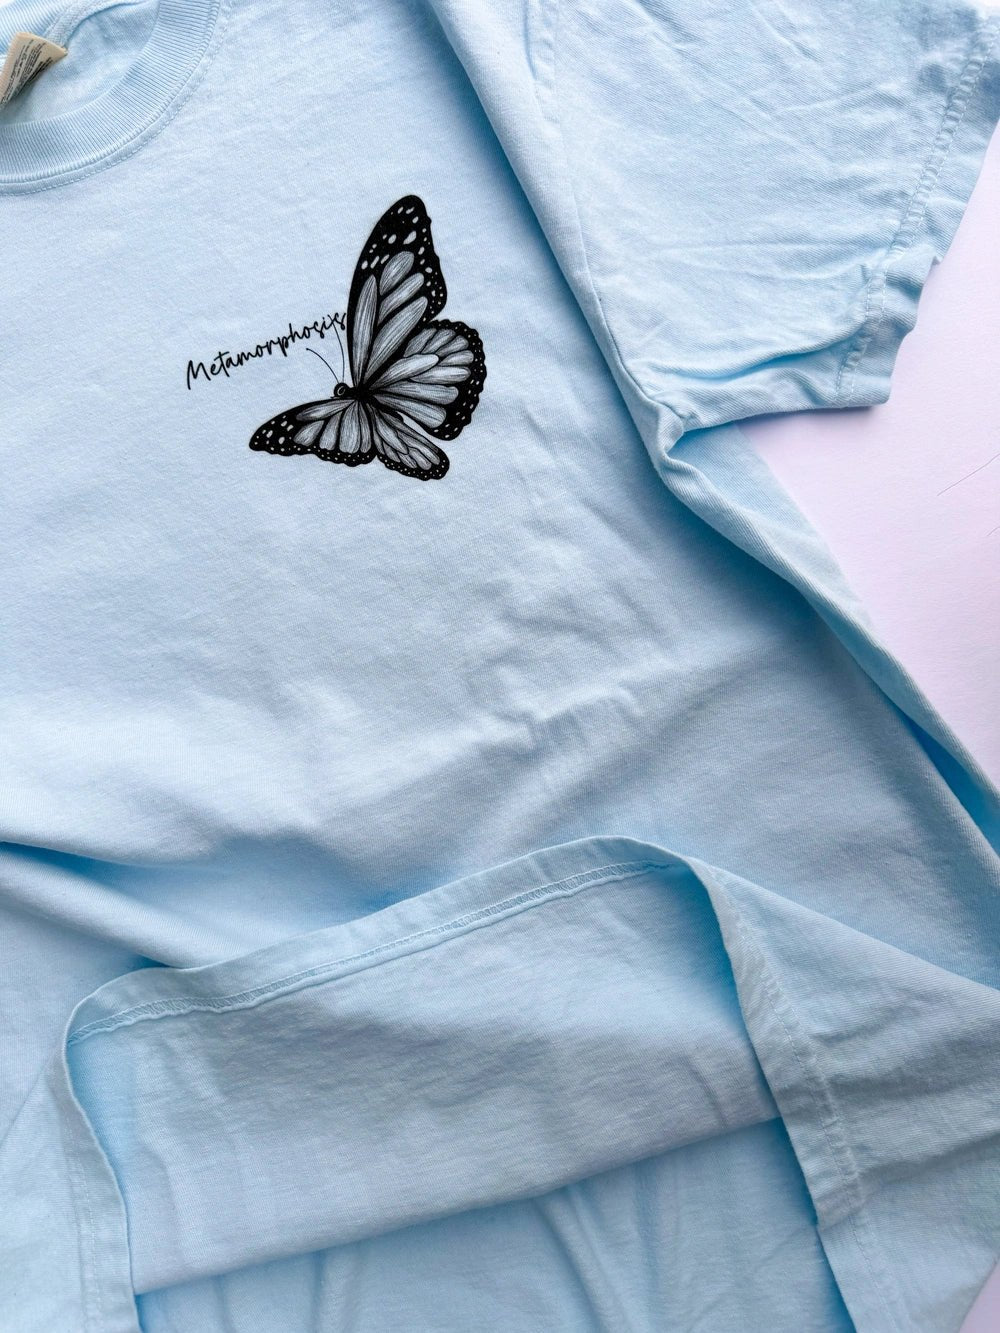 Metamorphosis Butterfly Vintage Styled Shirt - T-Shirt JOY'S | Custom Air Force 1 Sneakers